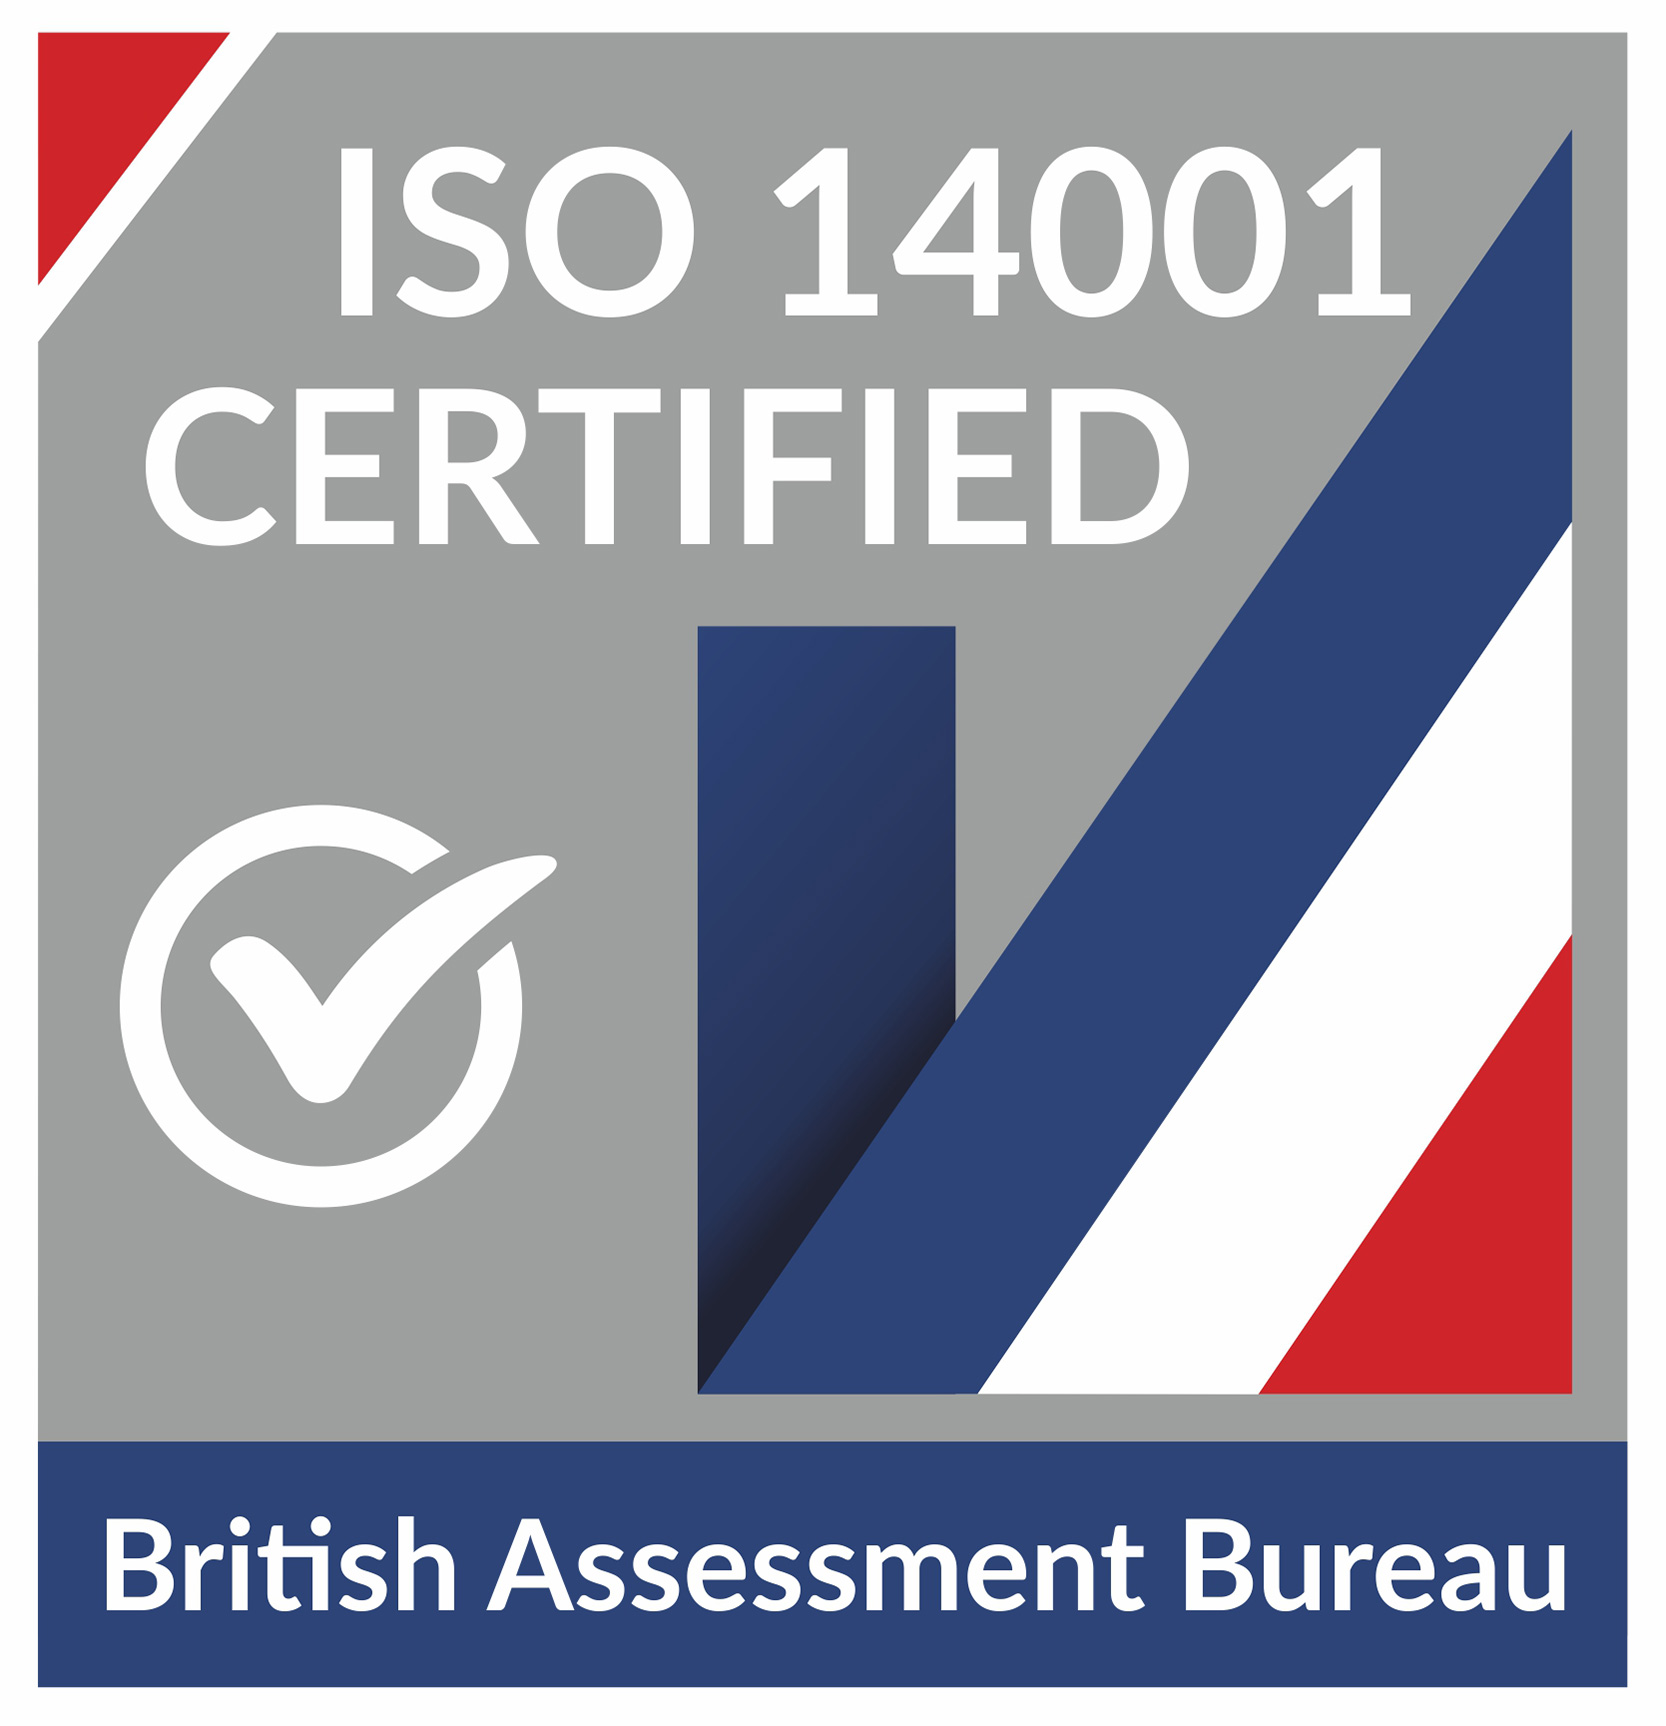 The British Assessment Bureau